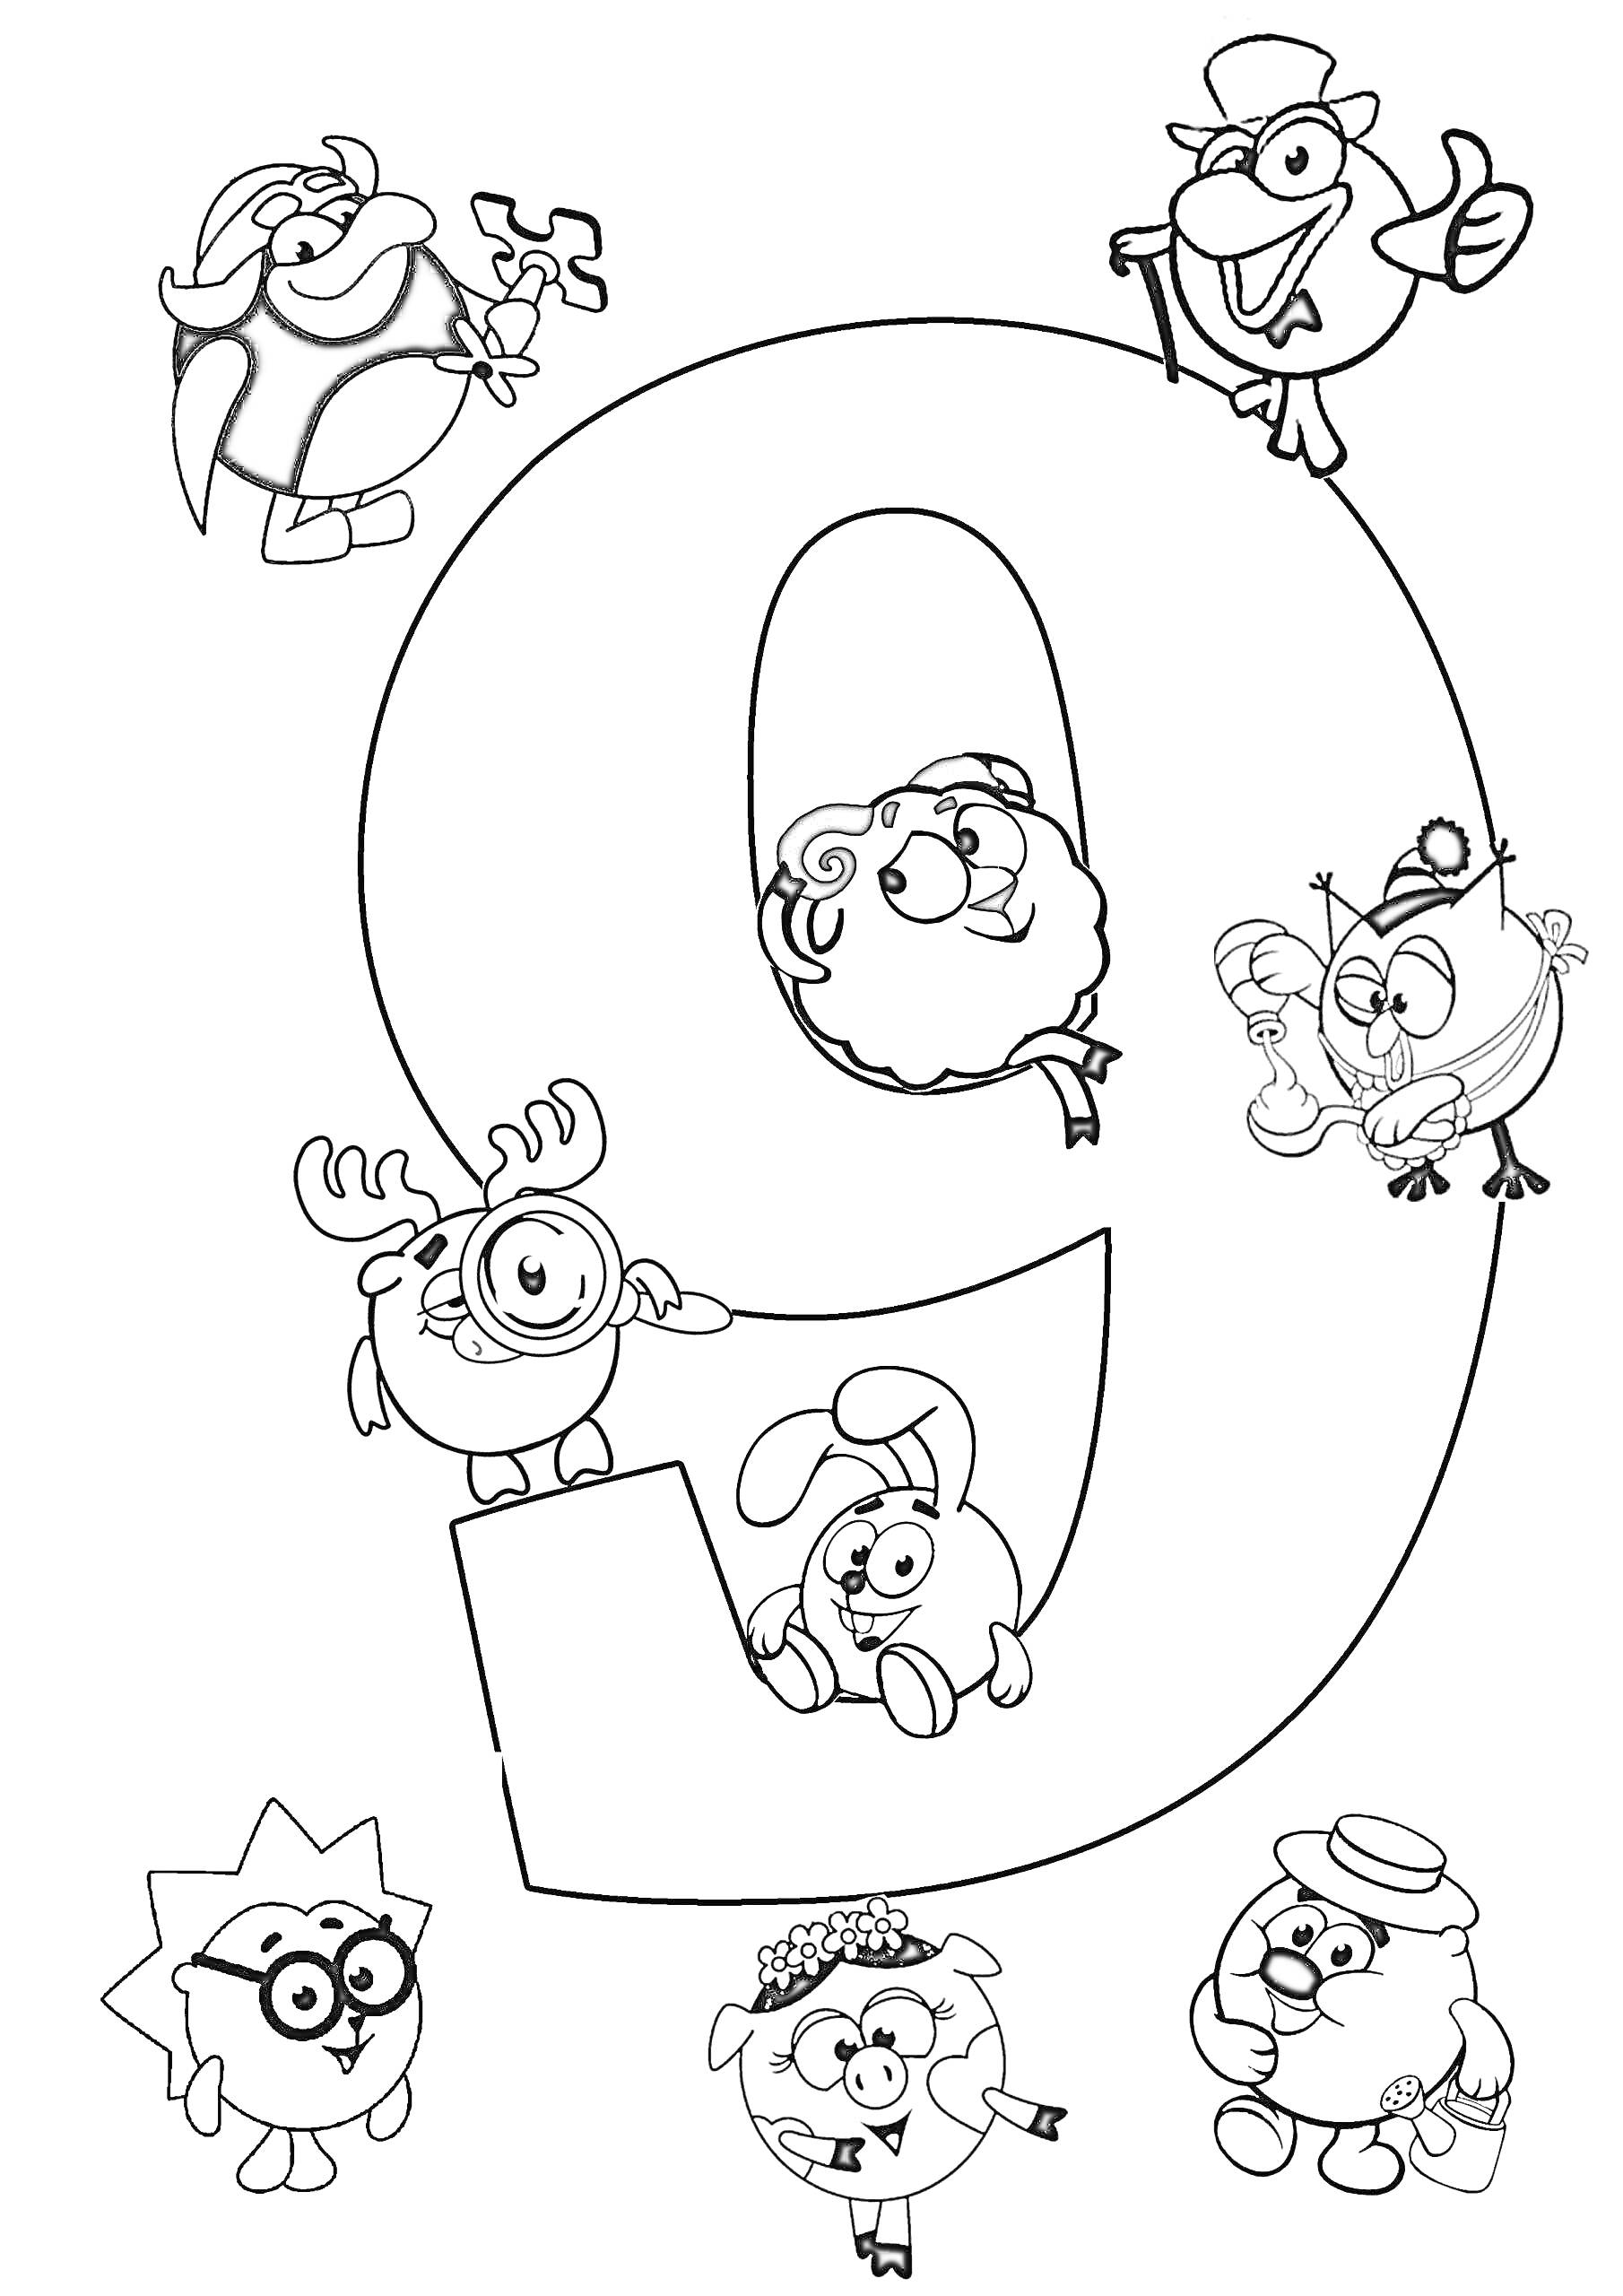 Раскраска Цифра 9 с персонажами мультфильма вокруг нее